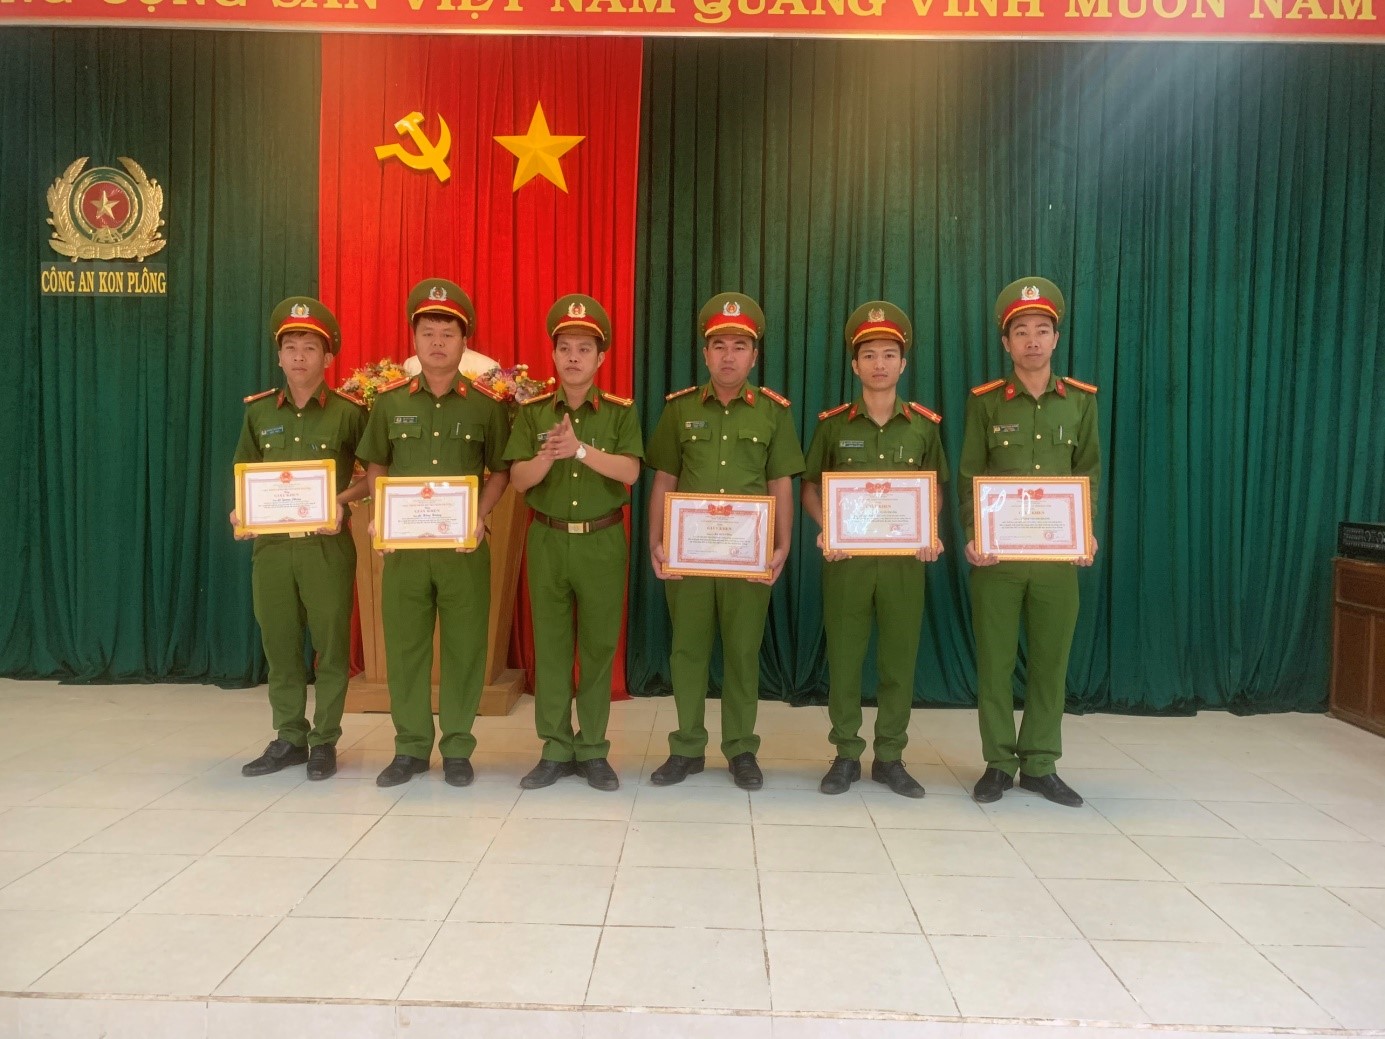 Đồng chí Trung tá Lê Đình Đại trao giấy khen cho Cán bộ chiến sỹ có thành tích xuất sắc trong công tác điều tra